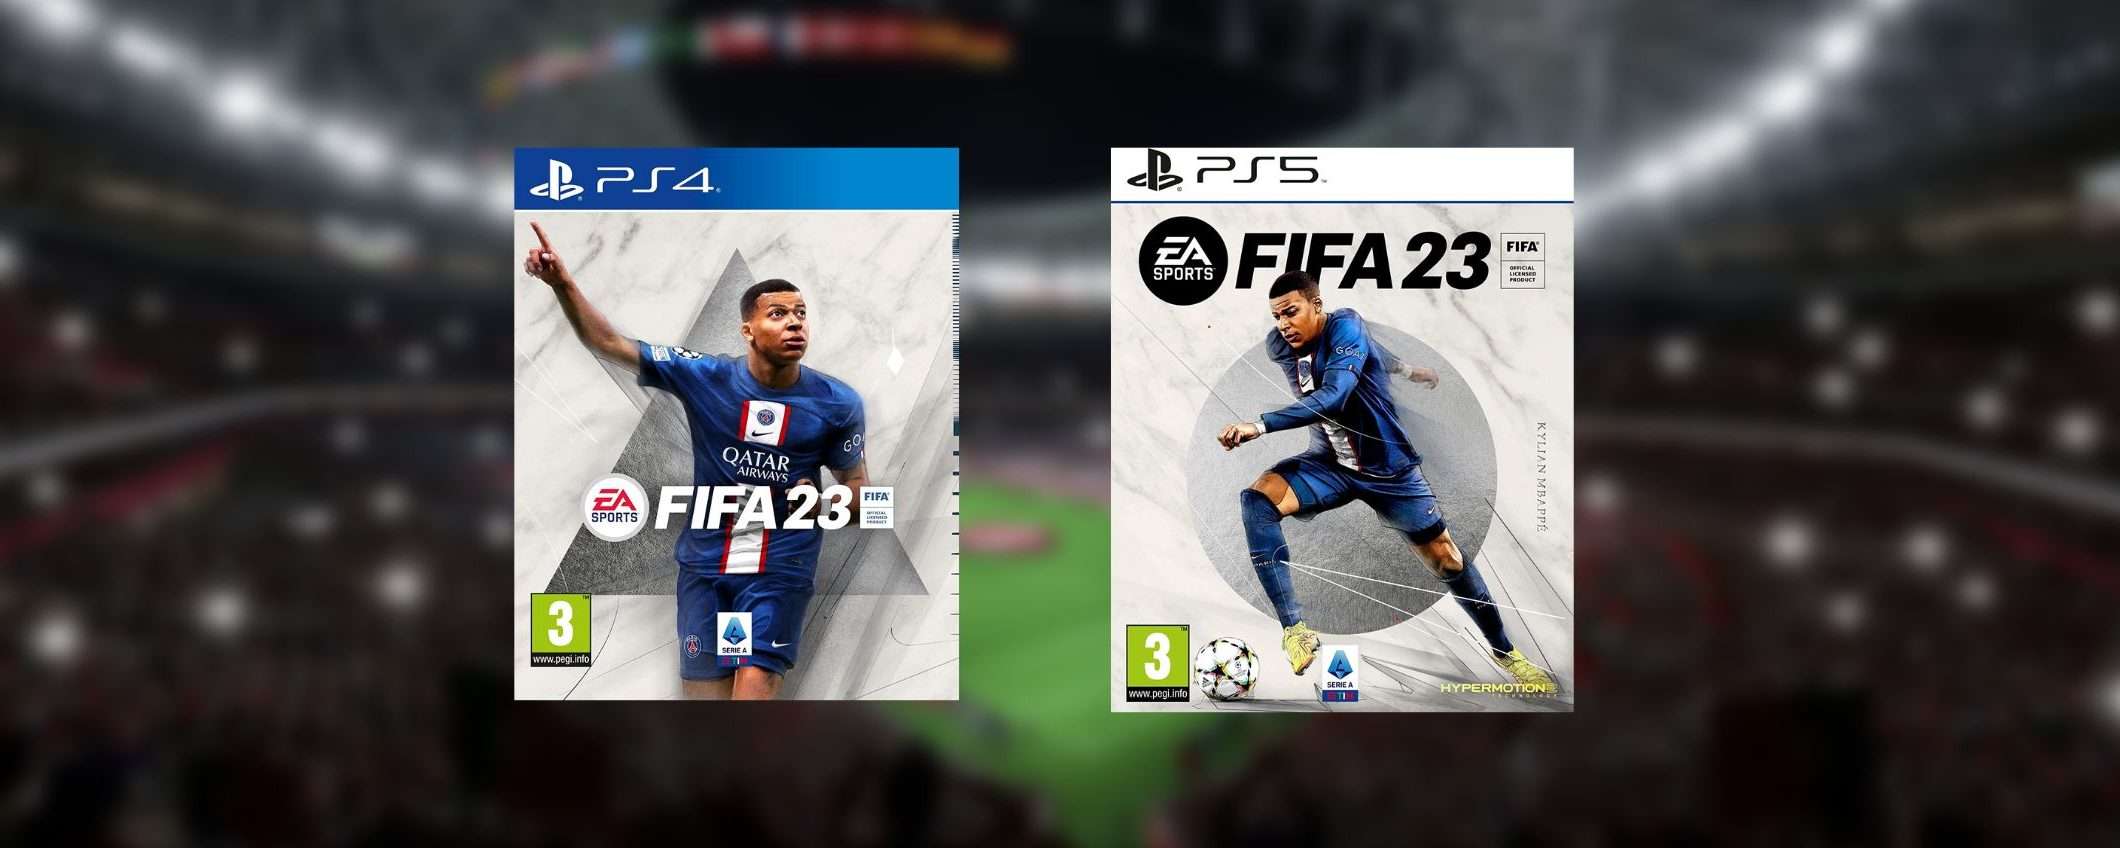 FIFA 23 in offerta fino a metà prezzo: ultime ore per il Cyber Monday